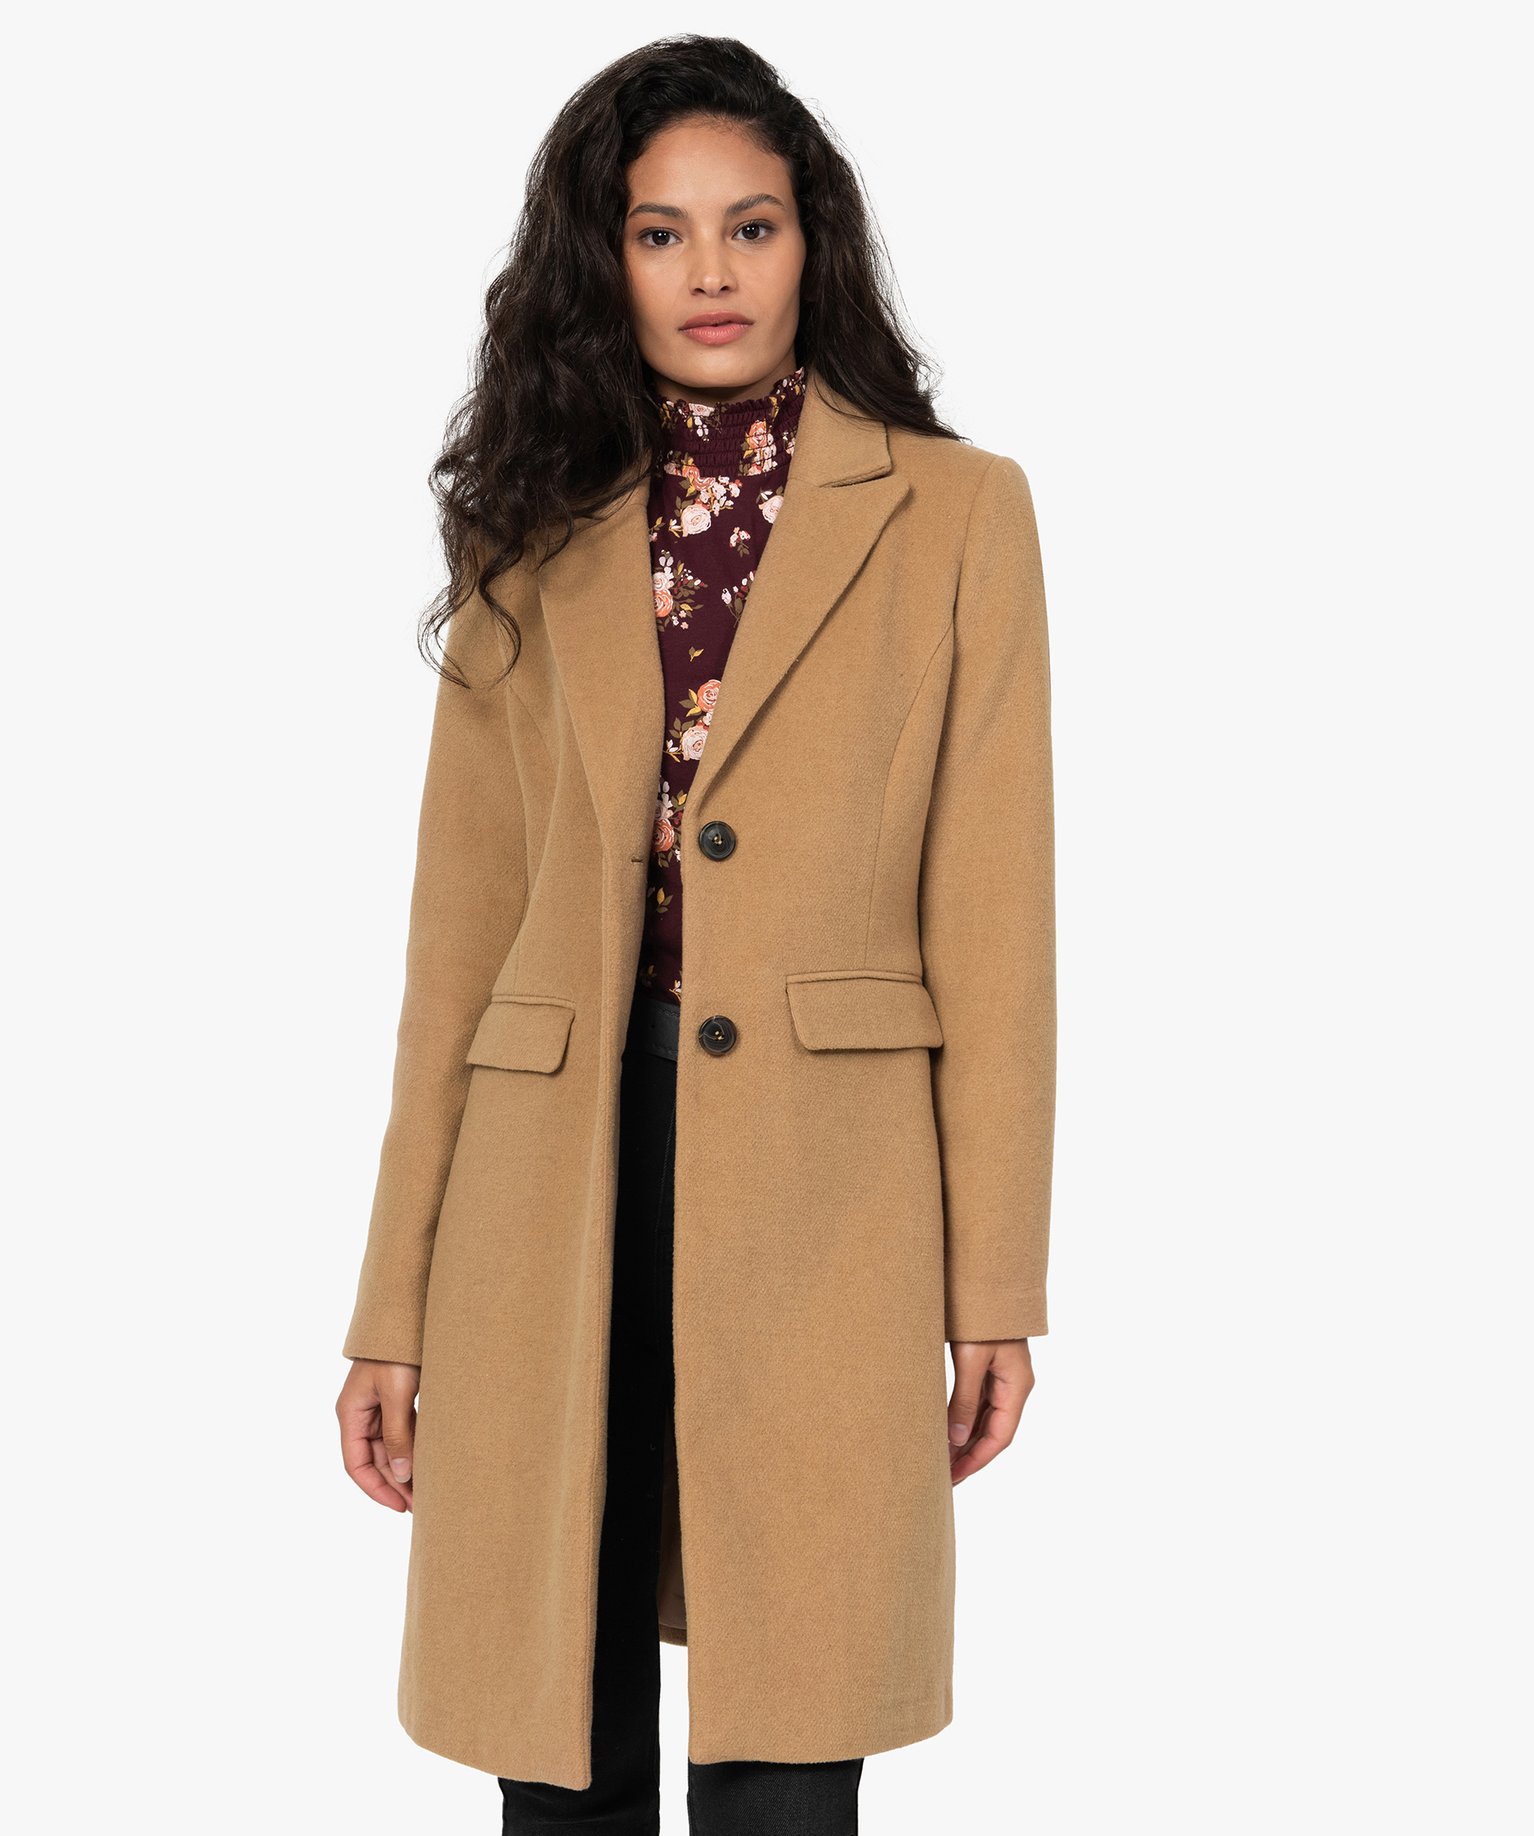 manteau femme avec col